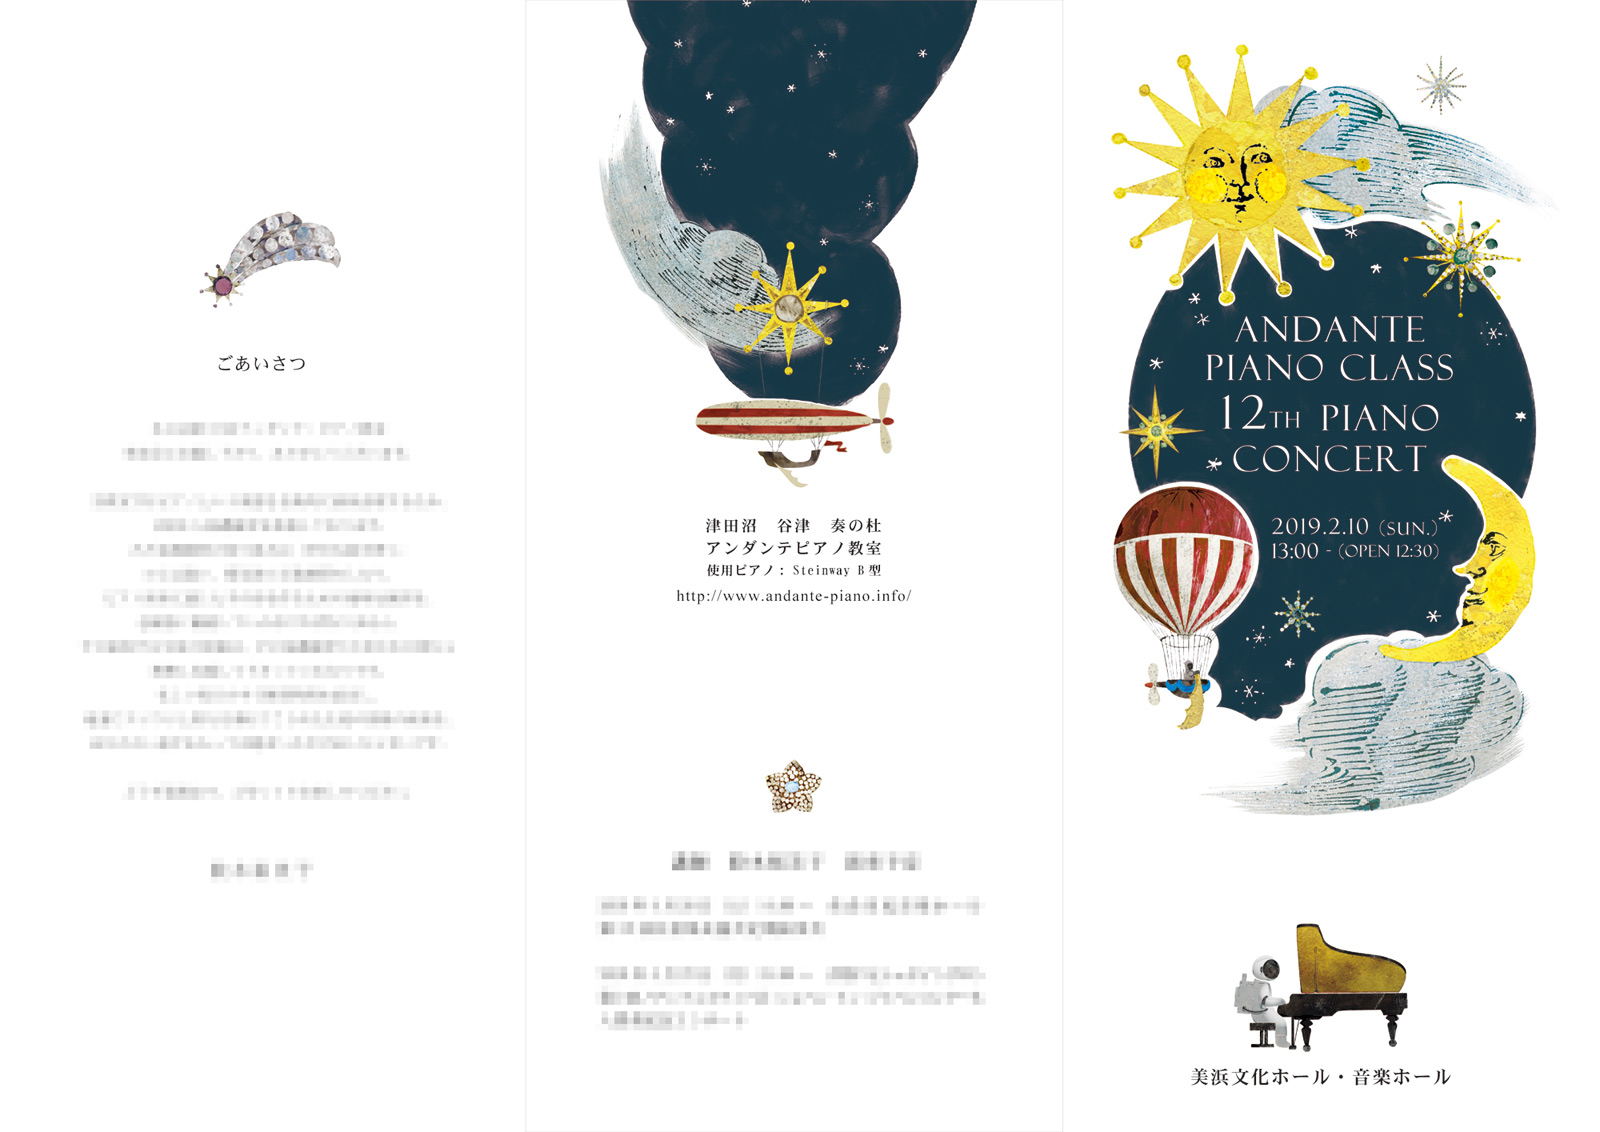 イシバシミキコのおぼえがきピアノ教室のイラスト入り発表会プログラム。